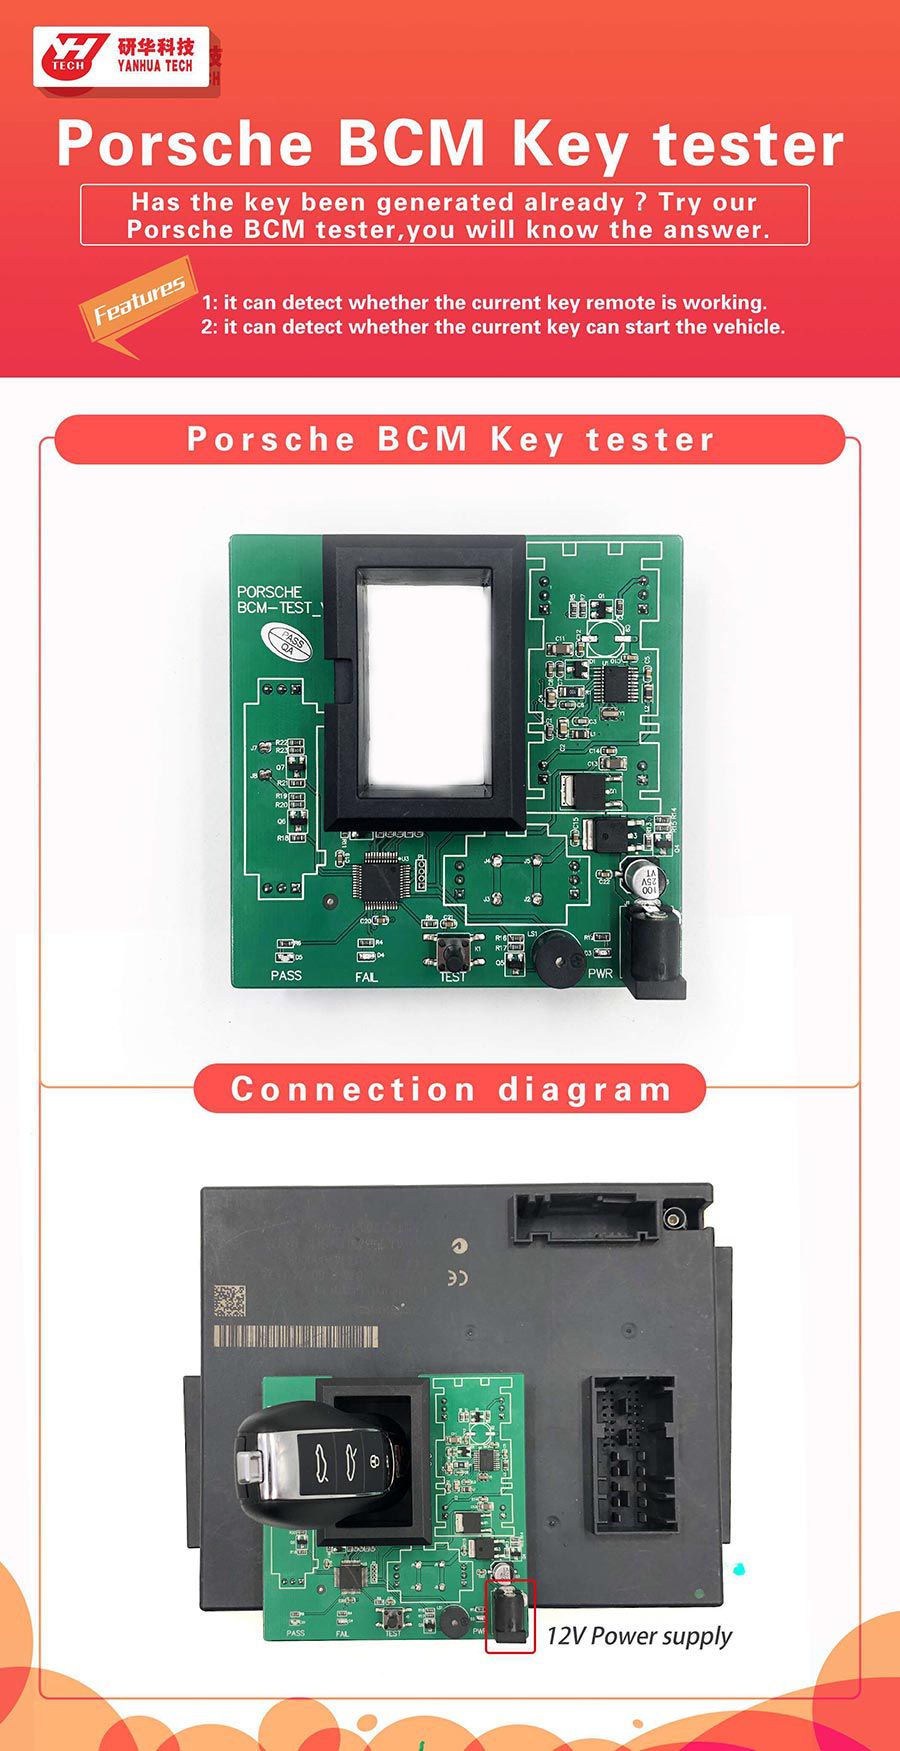 El detector Porsche BCM se utiliza con el Mini Acdp de Yanhua